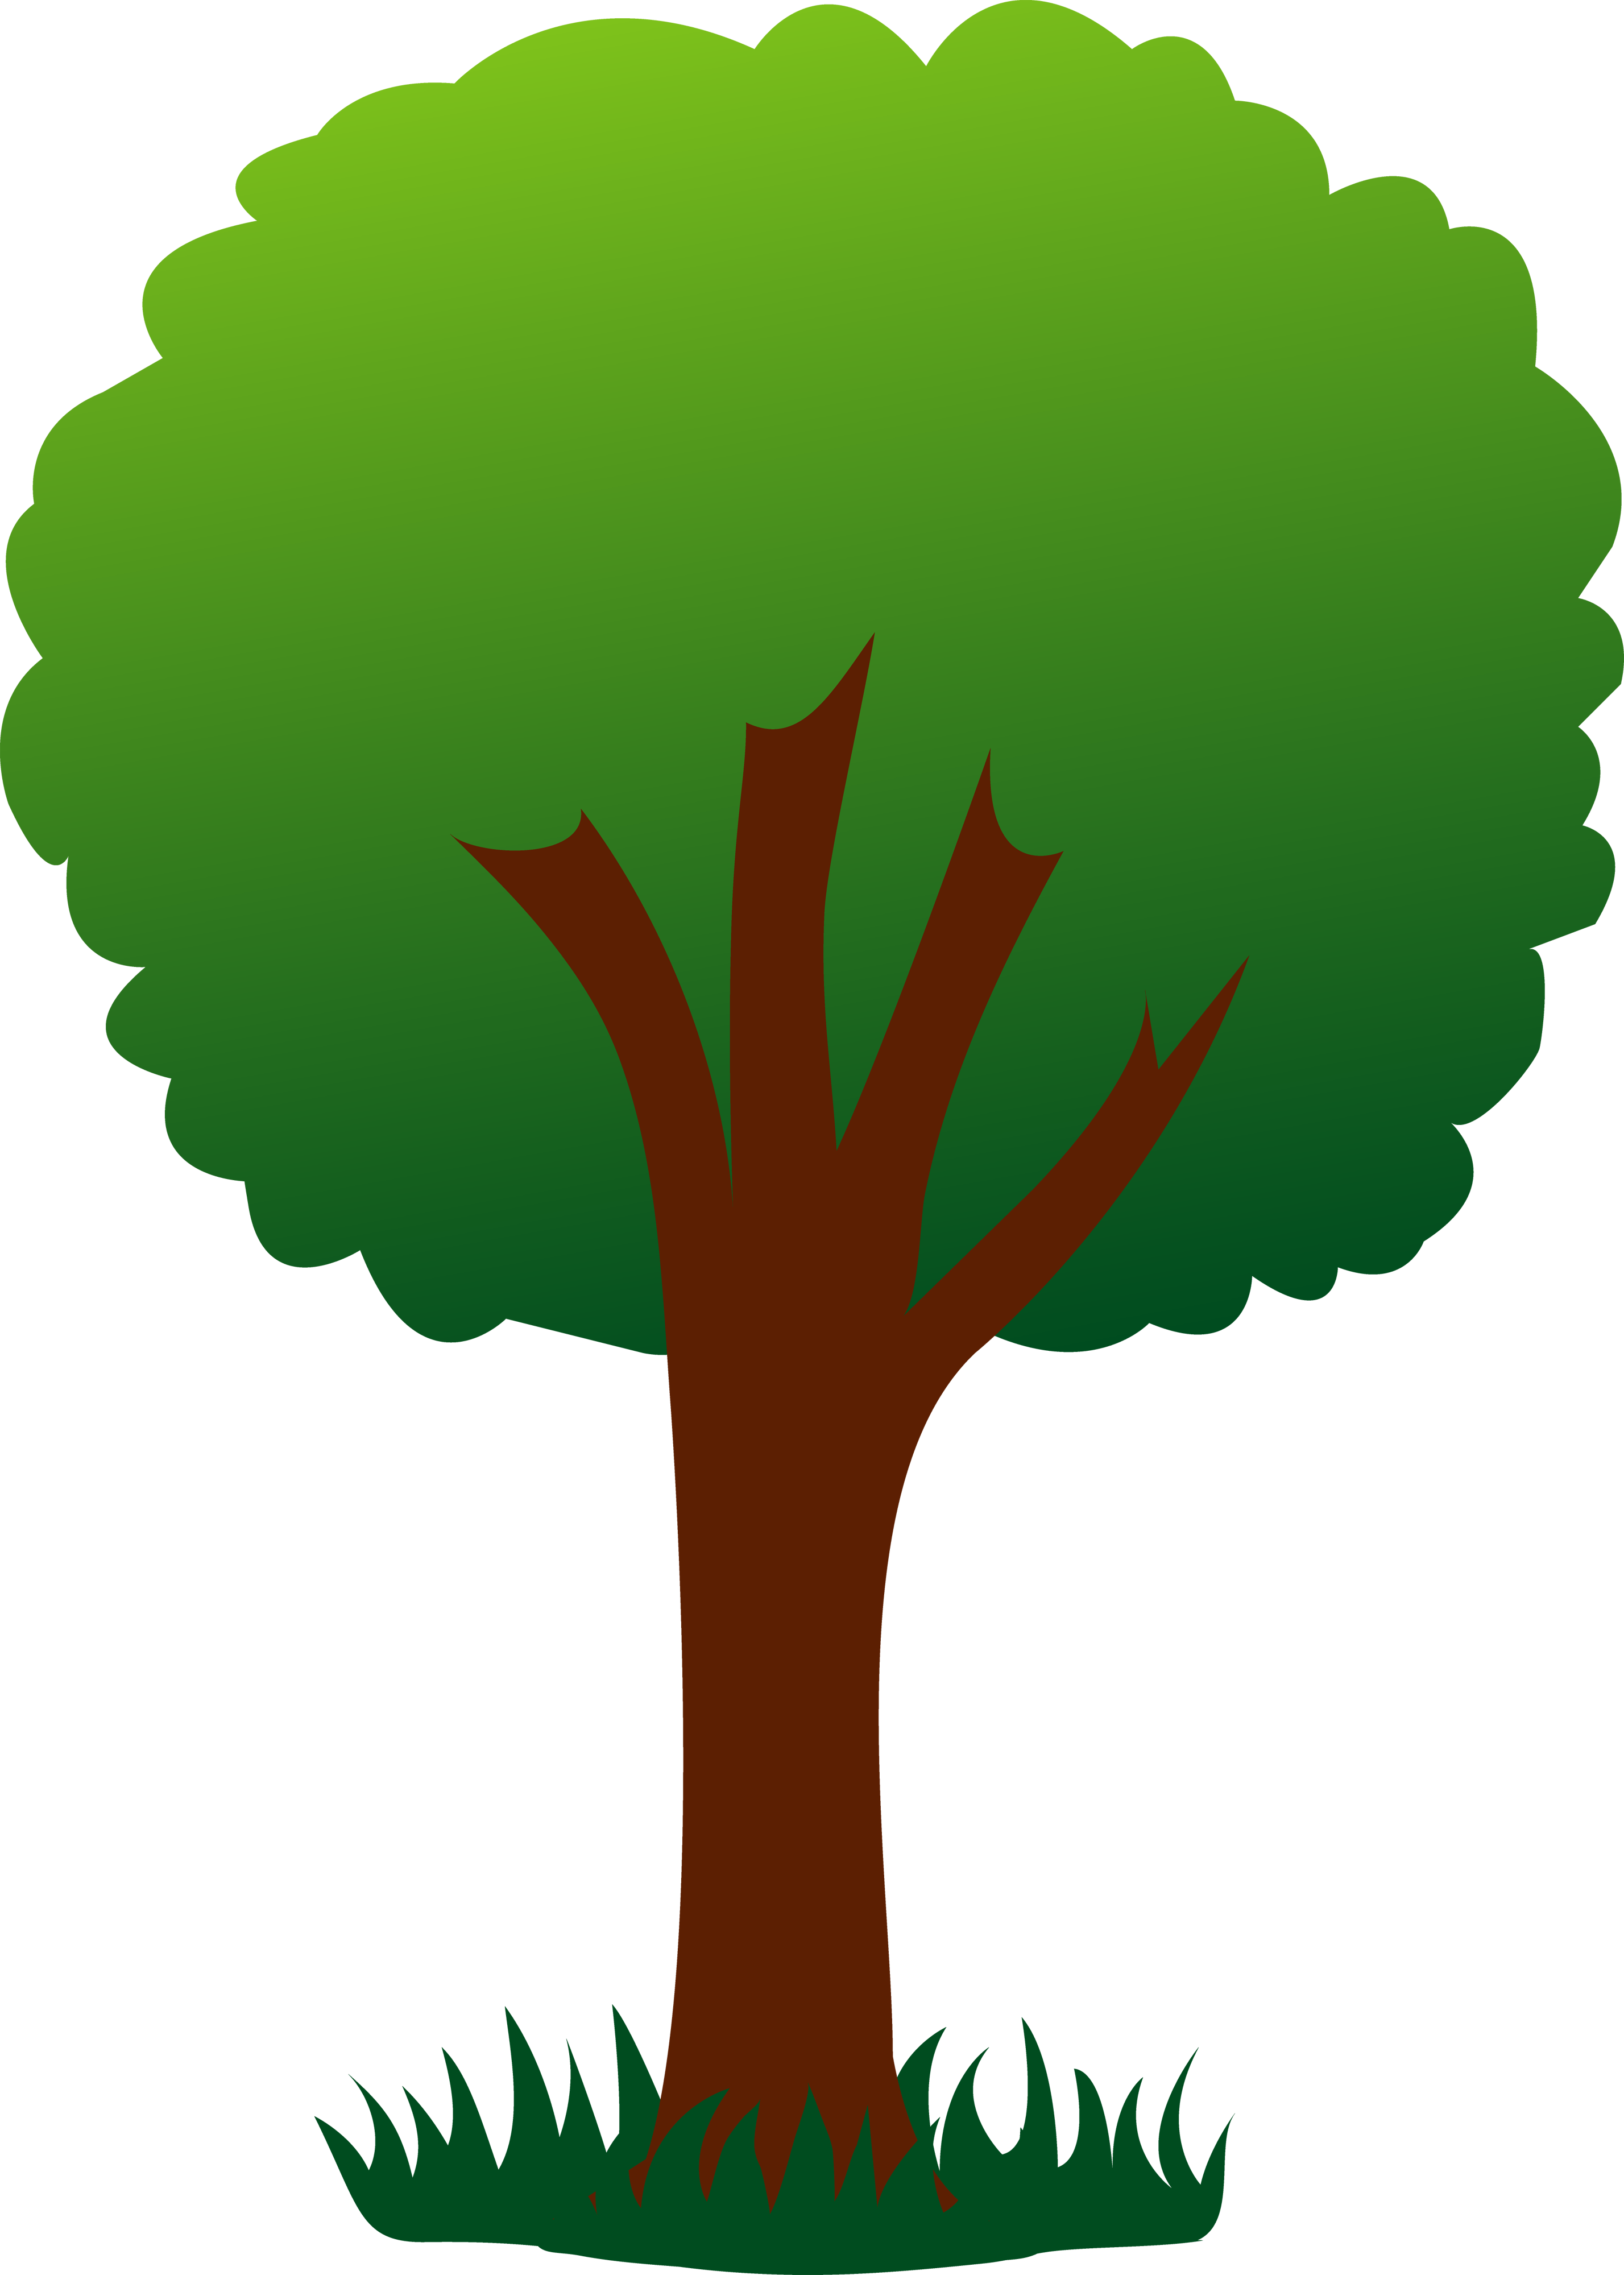 Clip art for trees